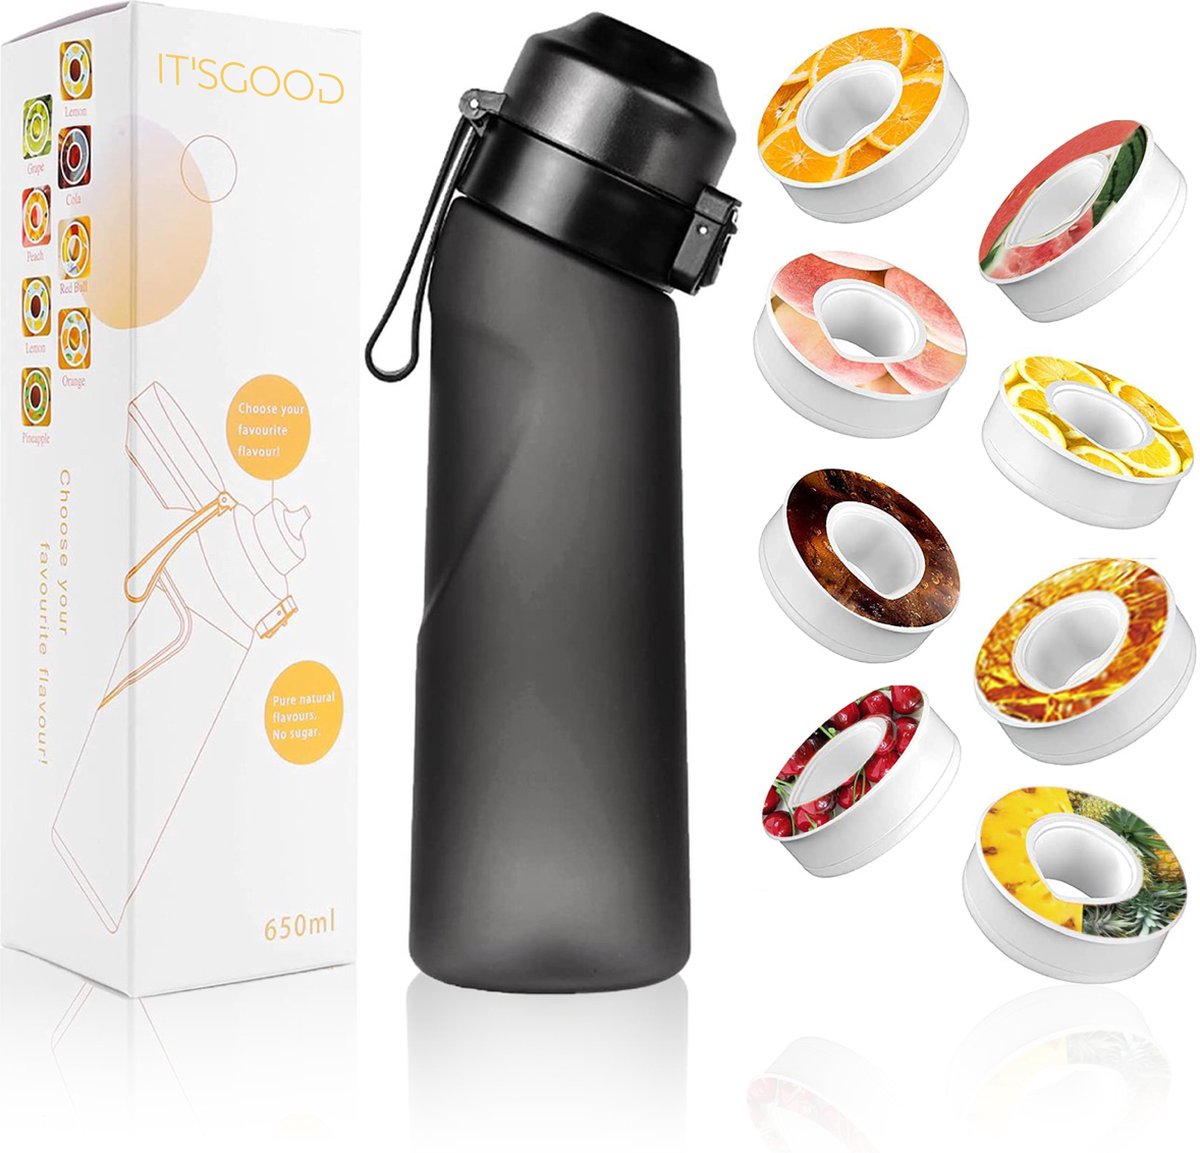 It'sgood - Air Water Up Fles met 8 Pods - ZWART - 650 ml - Drinkfles - Fles - Waterfles voor Sport - BPA-vrij - Starterset - Starterskit - Aromacapsules 0 suiker